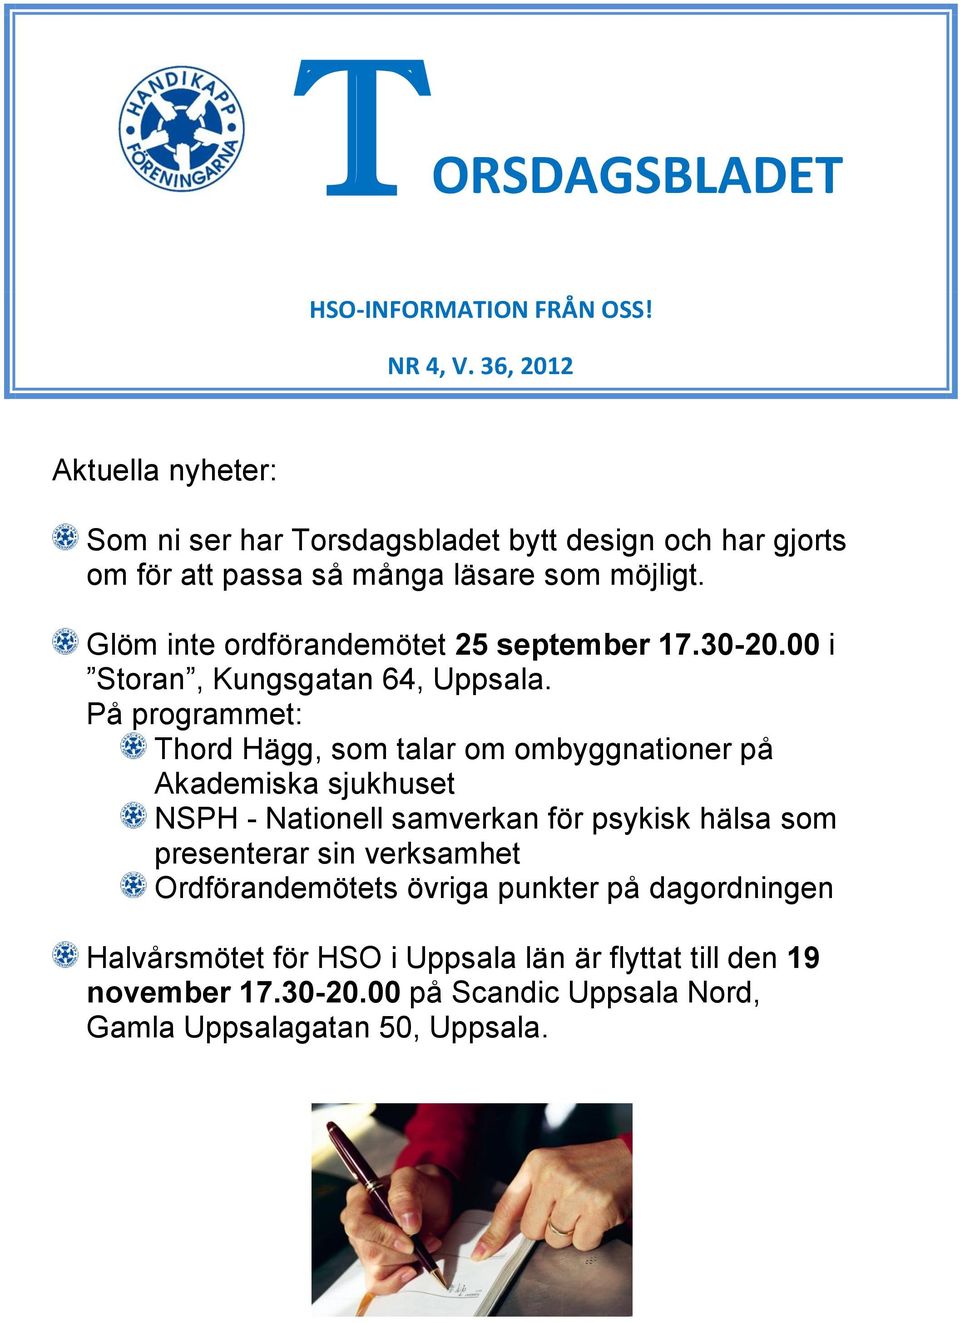 Glöm inte ordförandemötet 25 september 17.30-20.00 i Storan, Kungsgatan 64, Uppsala.